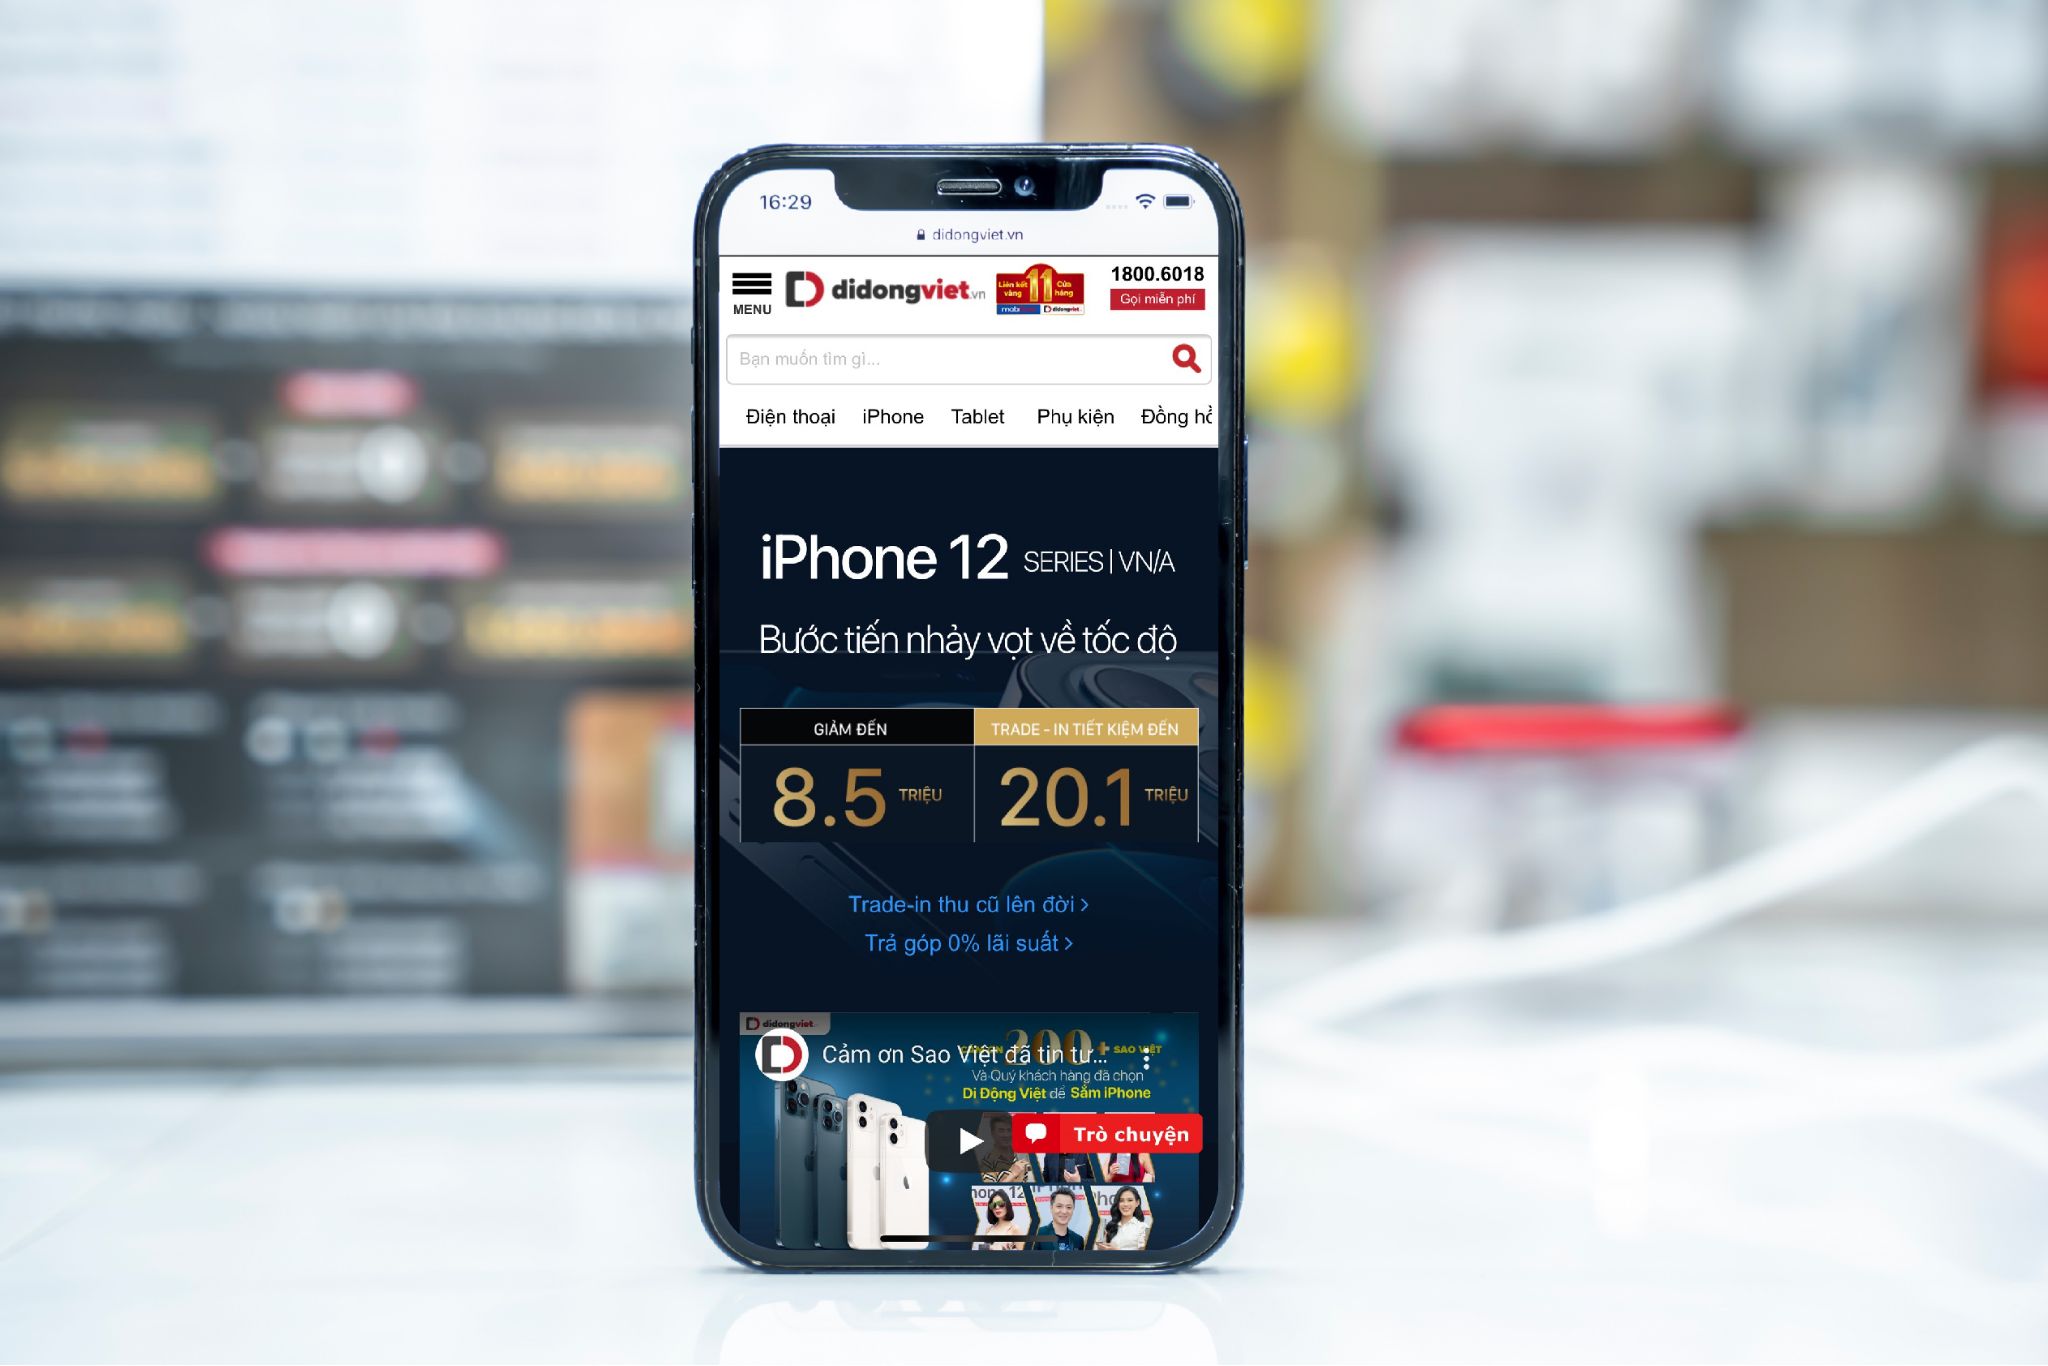 iPhone 12 Pro 128GB giảm đến 4.6 triệu, lượng khách đặt hàng tăng mạnh